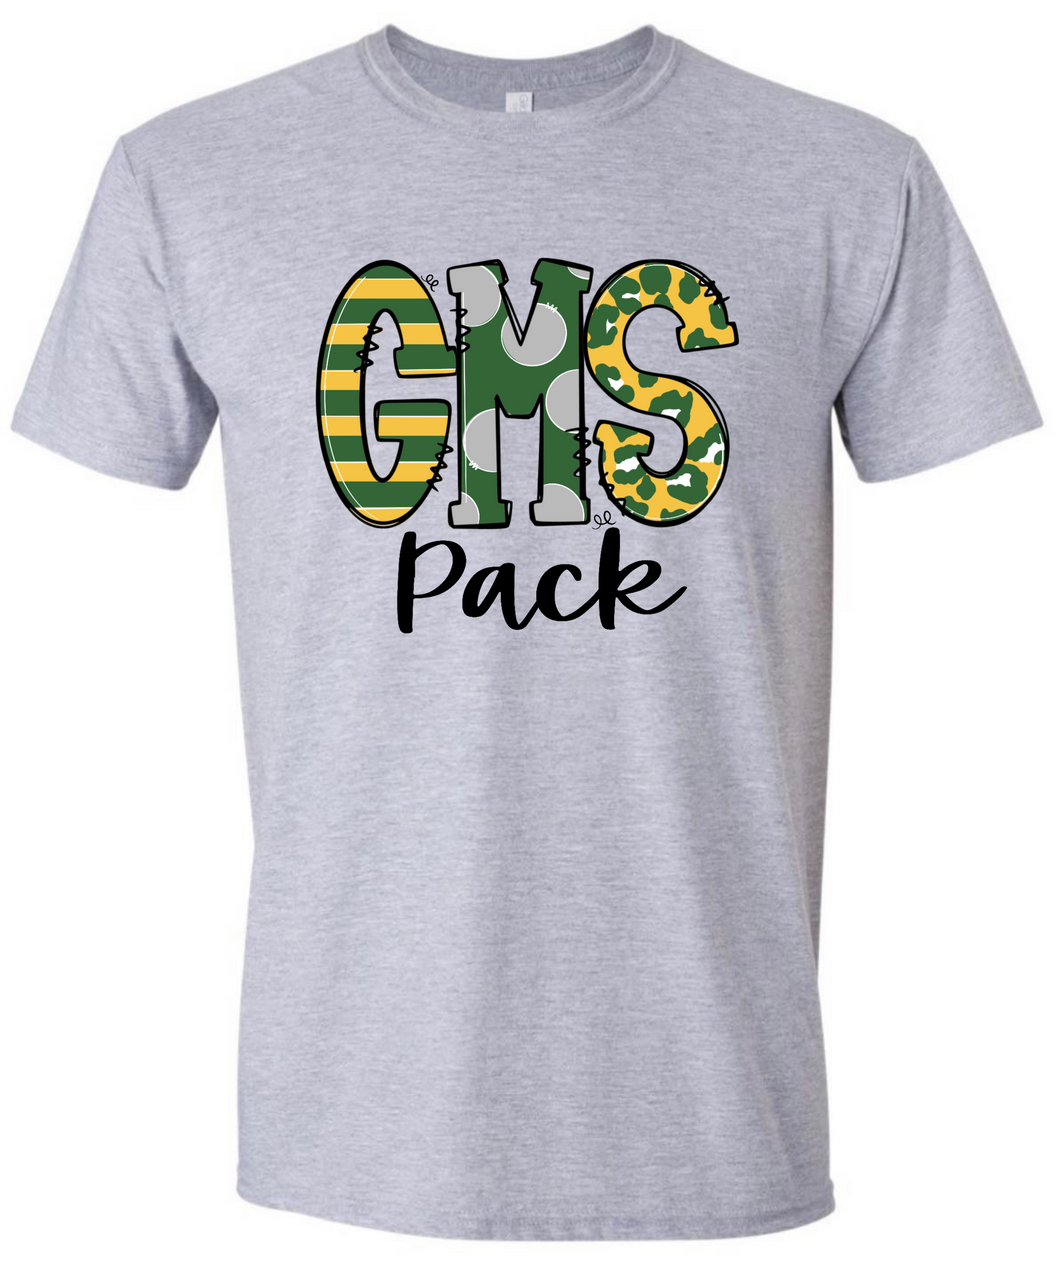 GMS Pack Tshirt